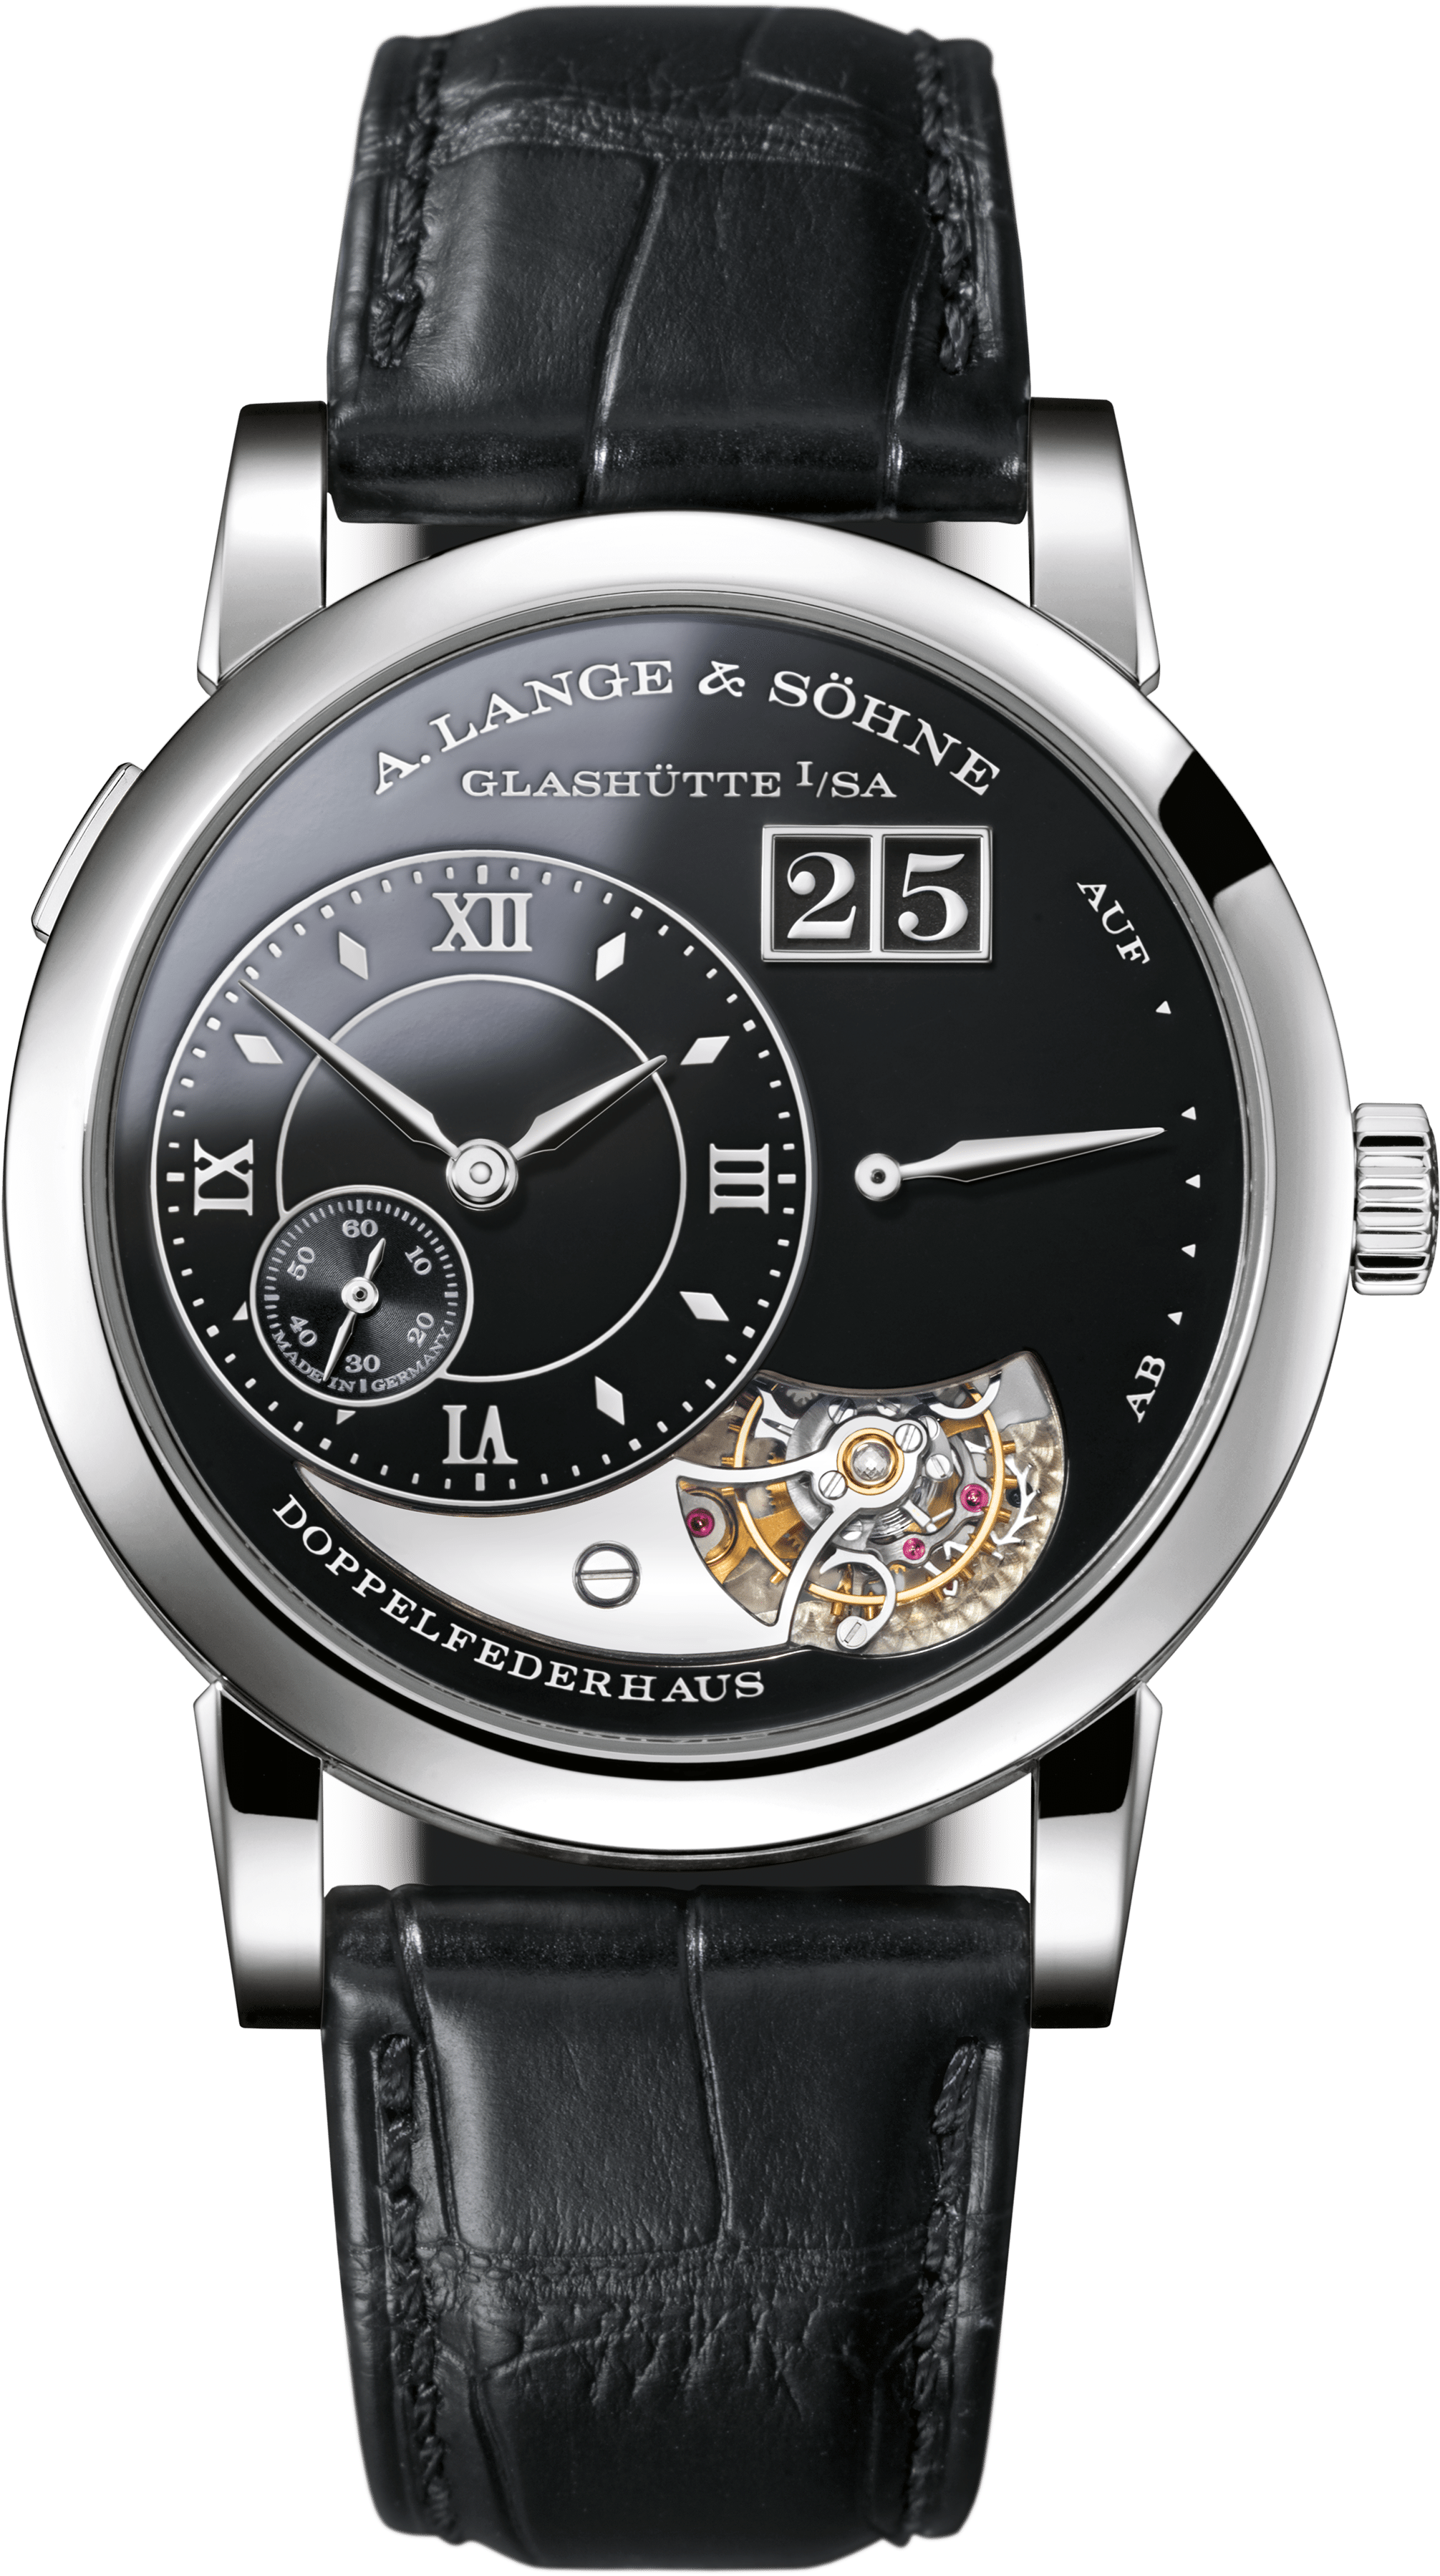 replica horloges kopen in nederland